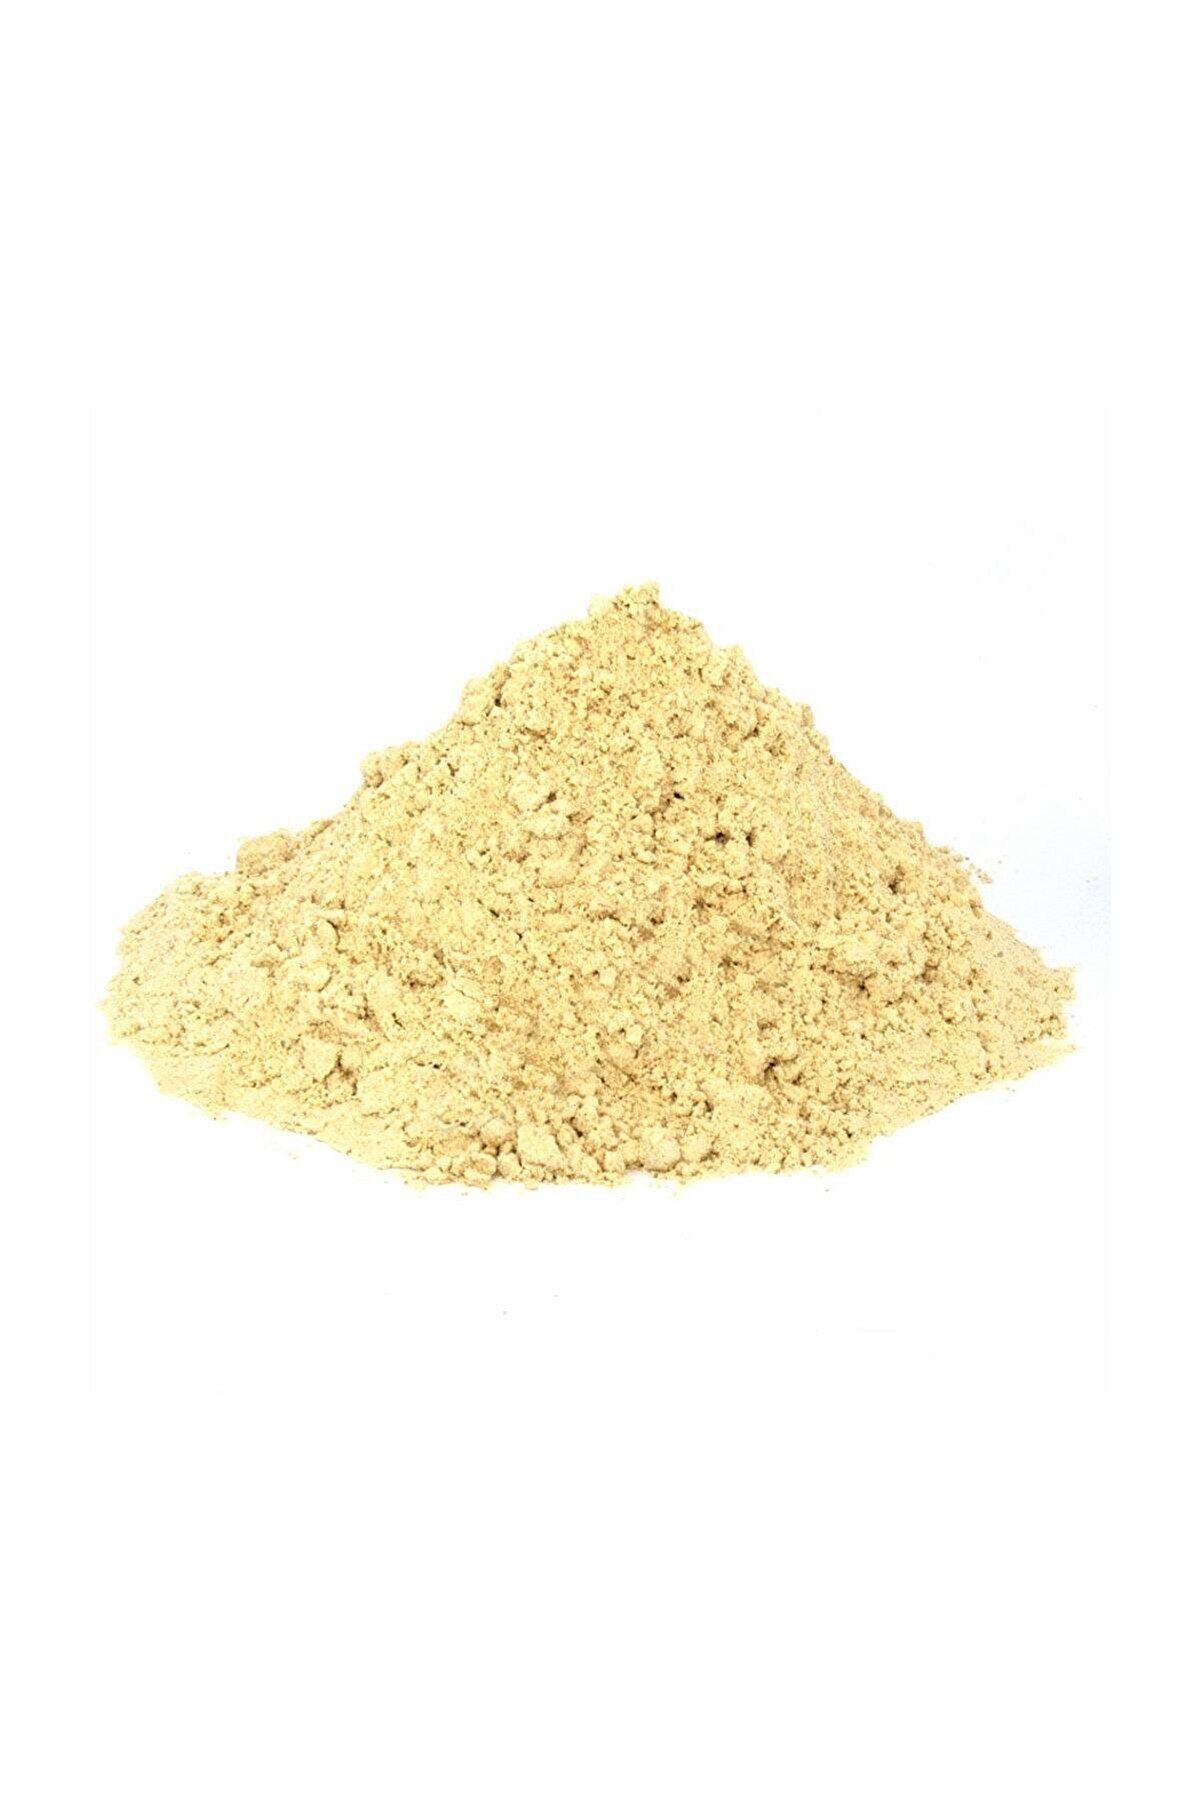 Genel Markalar Herbal Vital Zencefil Toz (ginger) (taze Öğütülmüş) 500 Gr